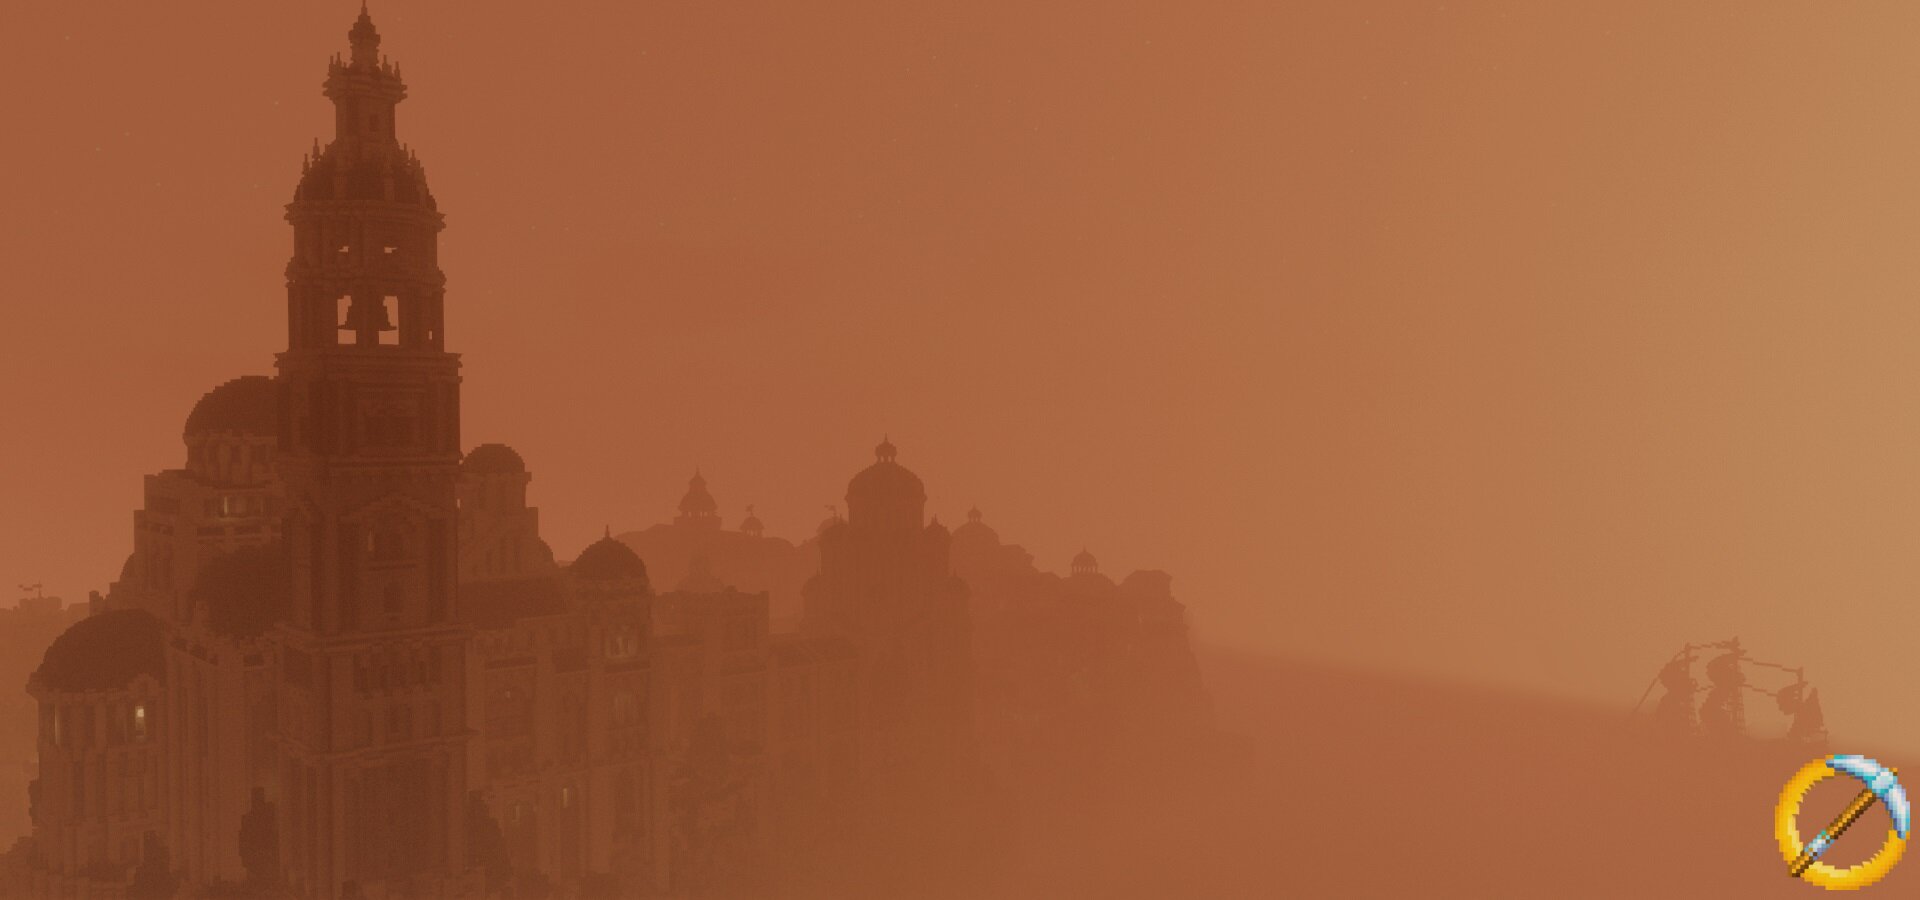 Dol Amroth in the morning fog